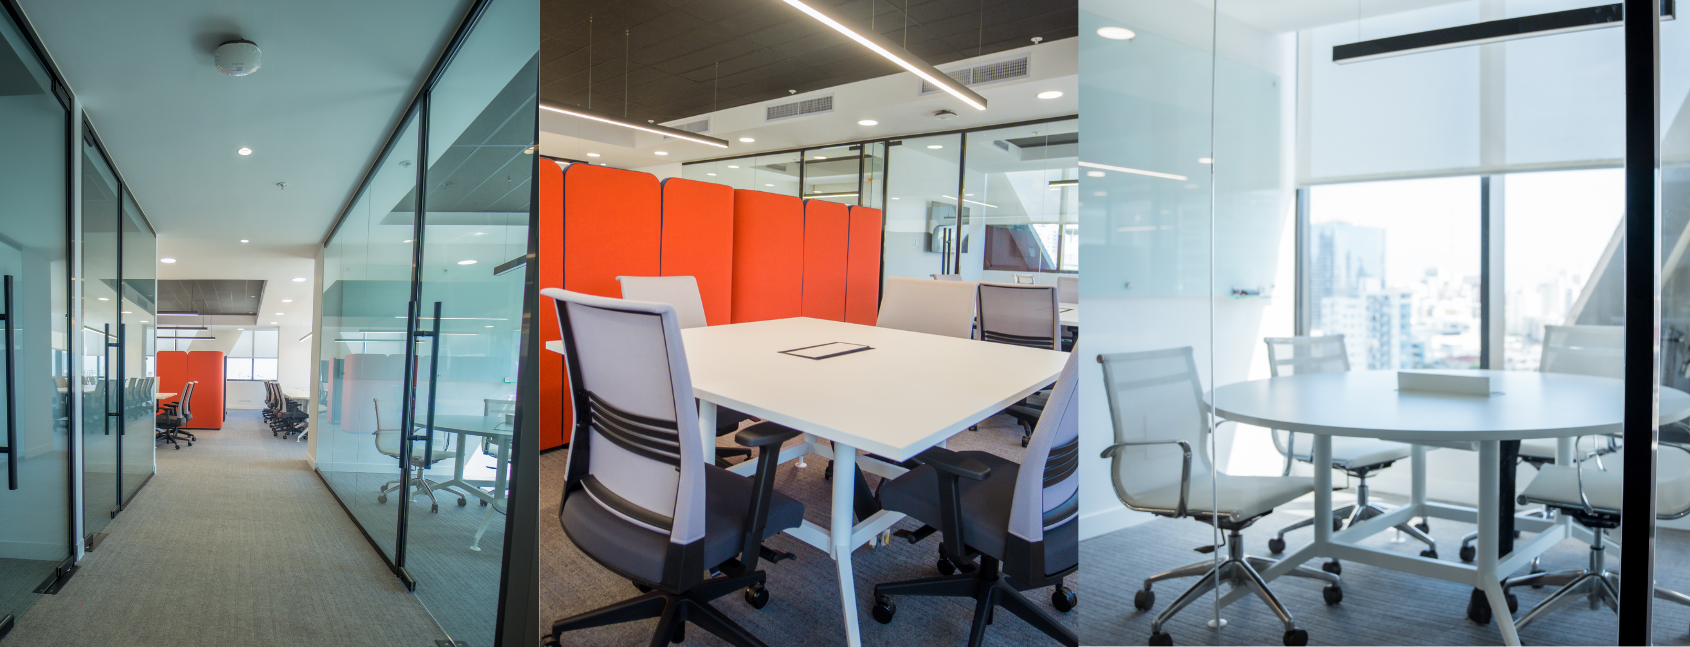 Inauguramos nuestro nuevo modelo de oficina, un espacio para la creatividad, la influencia y la innovación